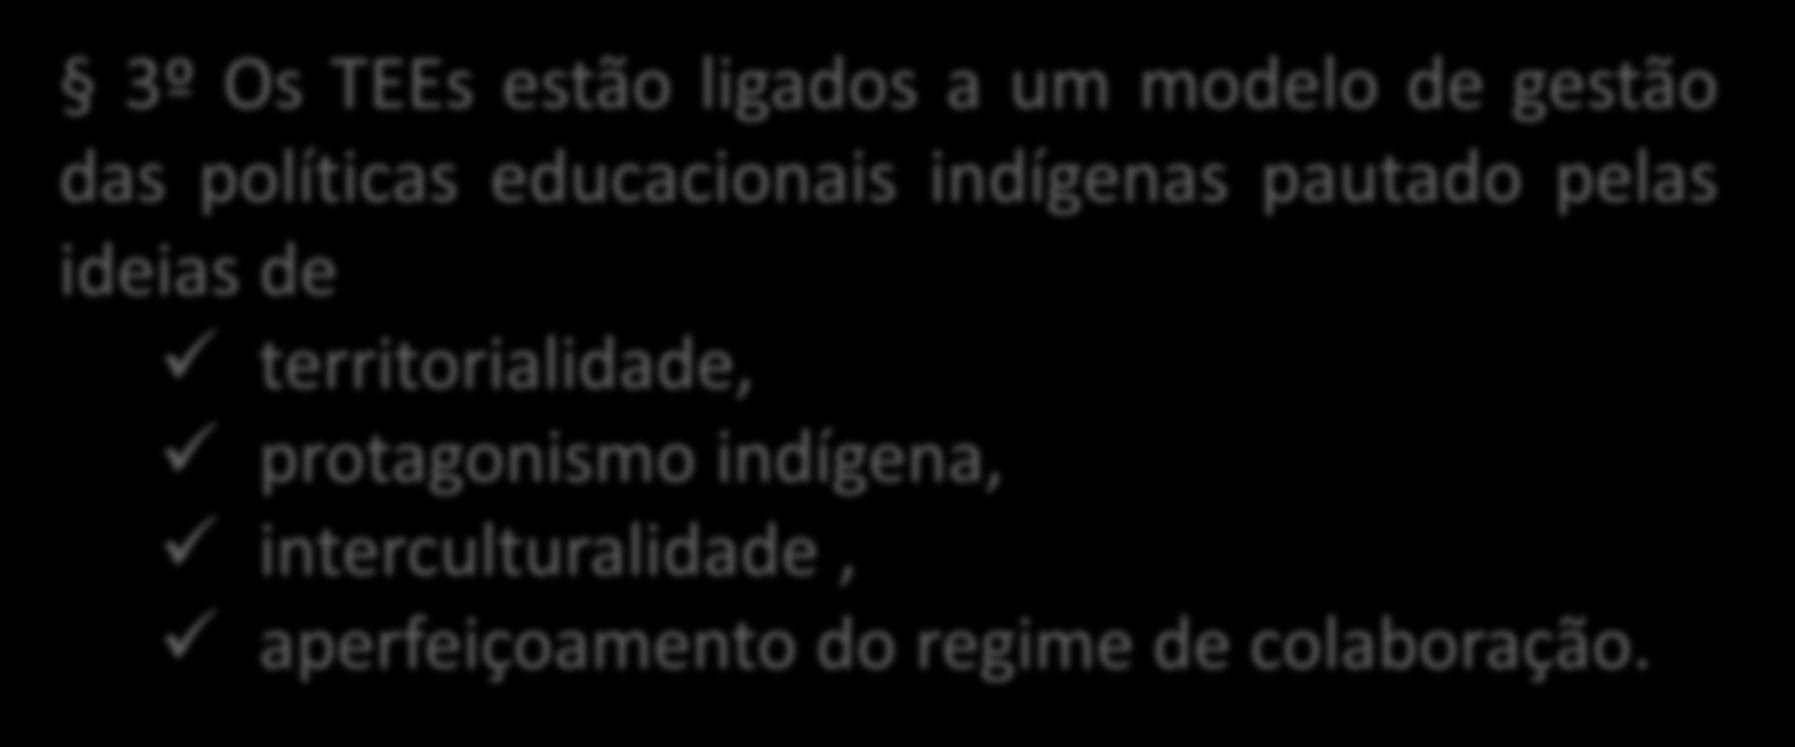 Base Legal 3º Os TEEs estão ligados a um modelo de gestão das políticas educacionais indígenas pautado pelas